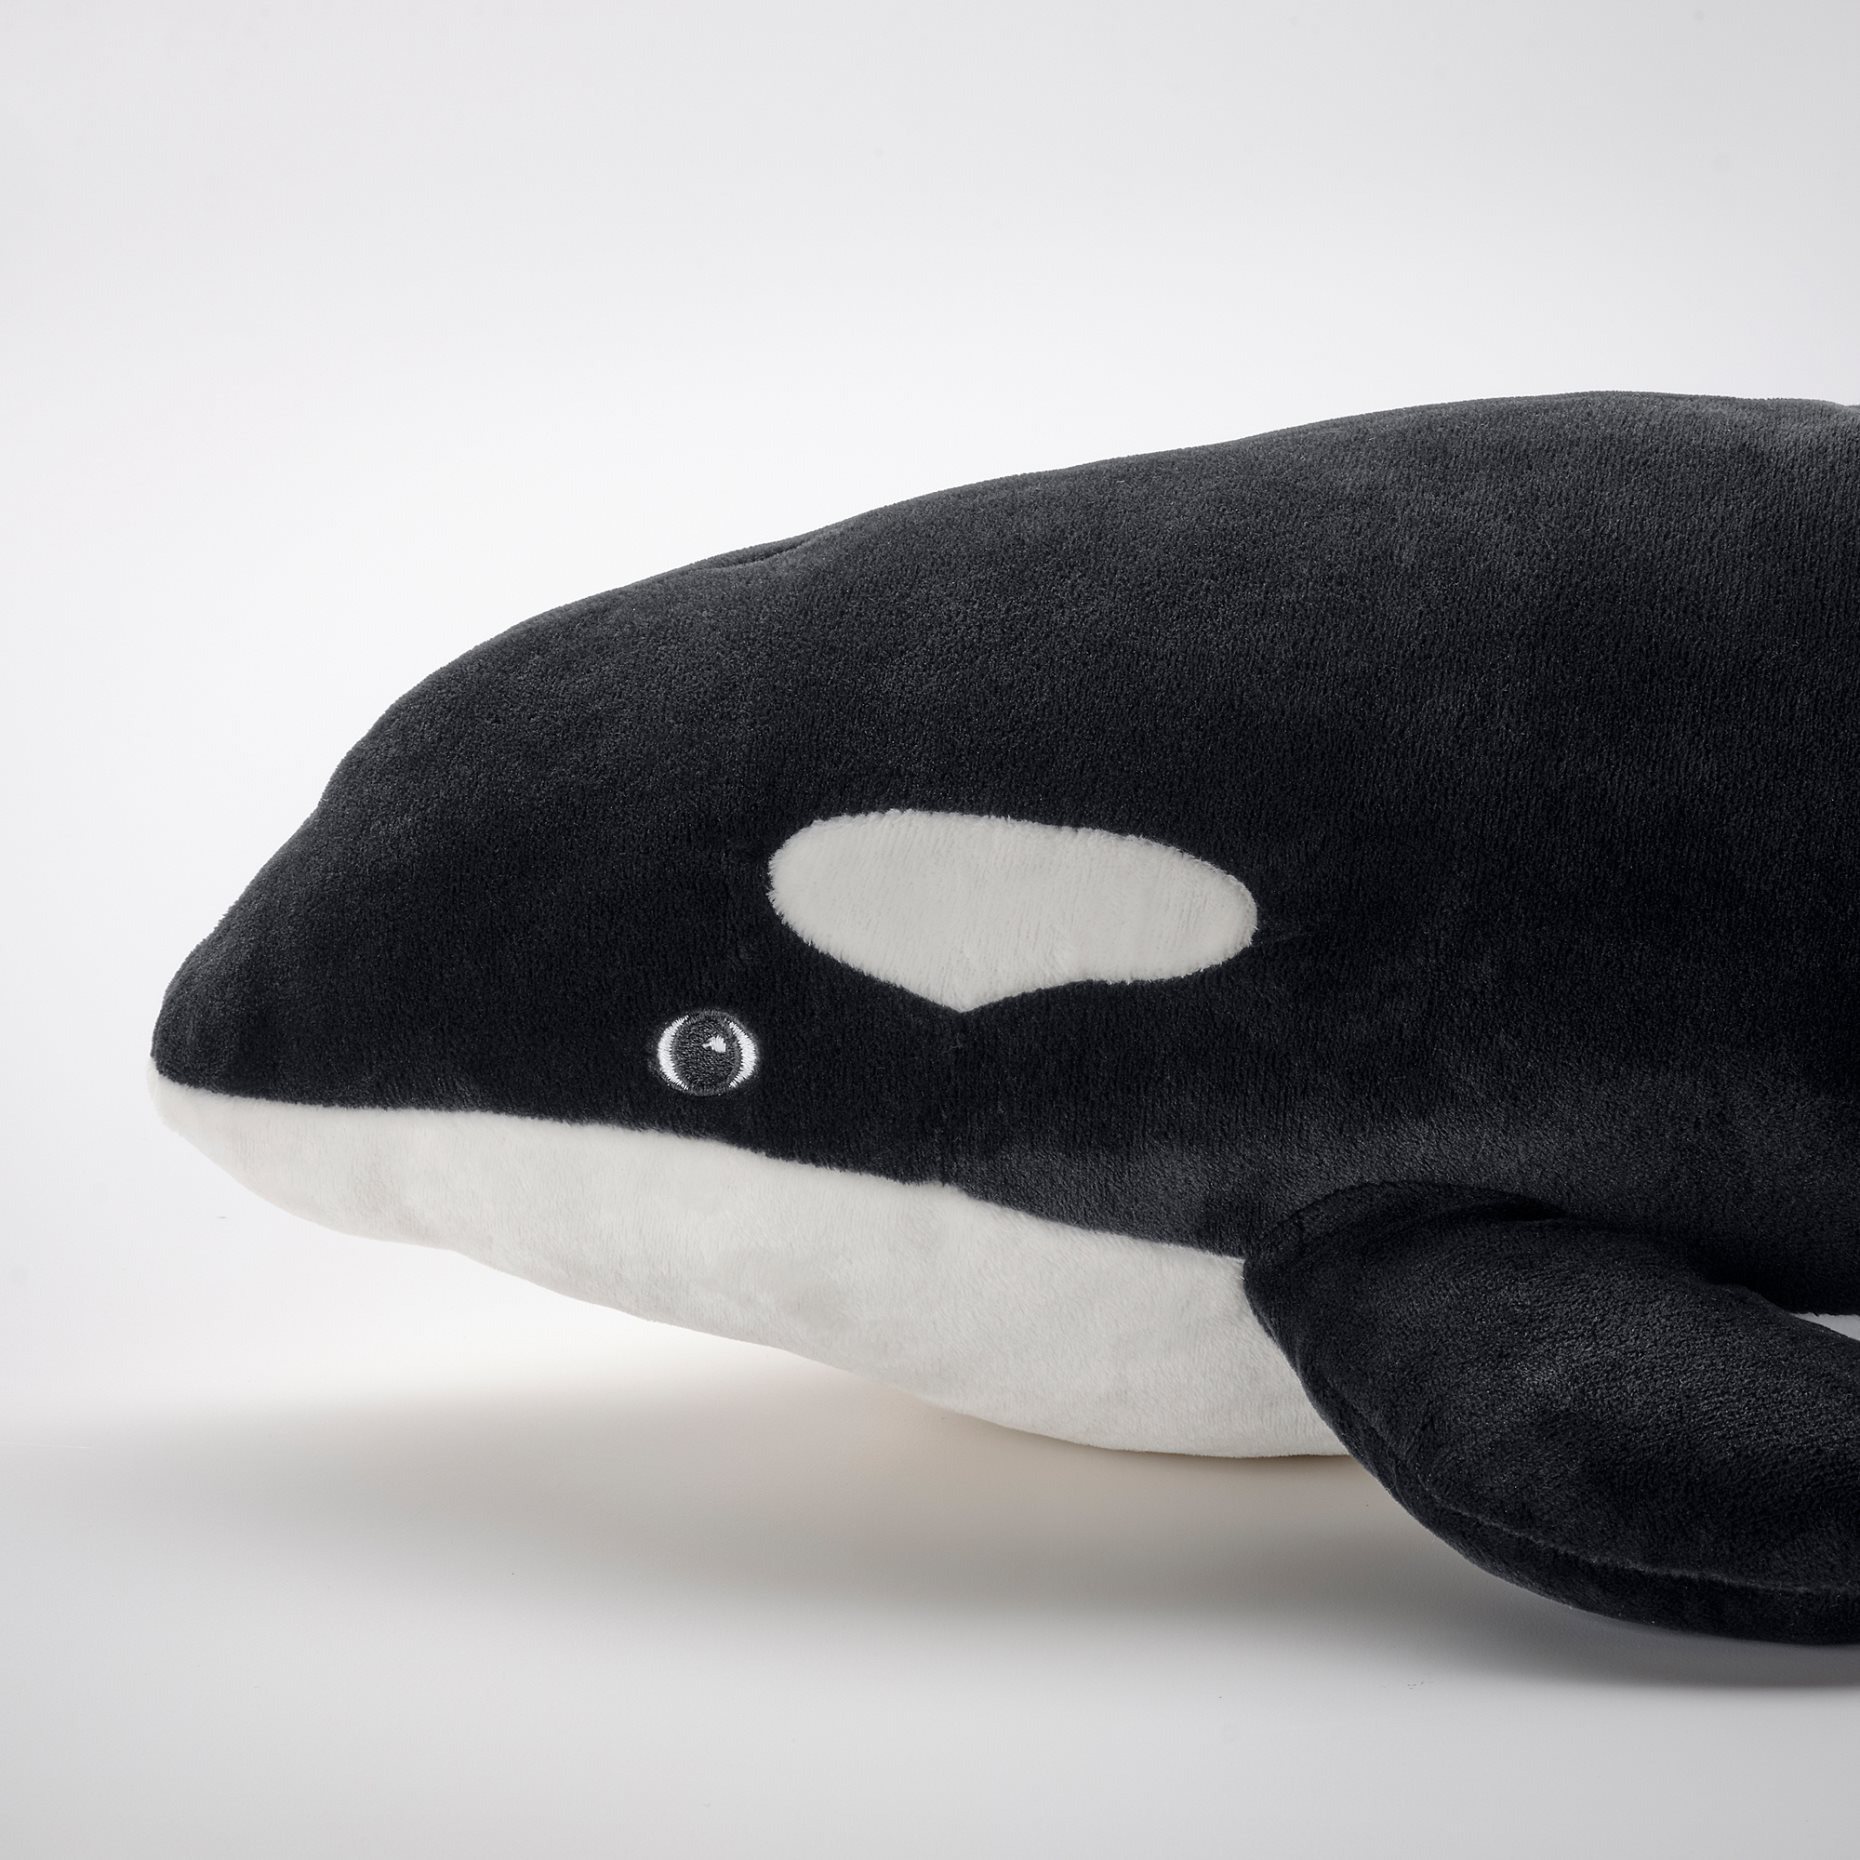 BLÅVINGAD, soft toy/Orca, 60 cm, 605.221.10